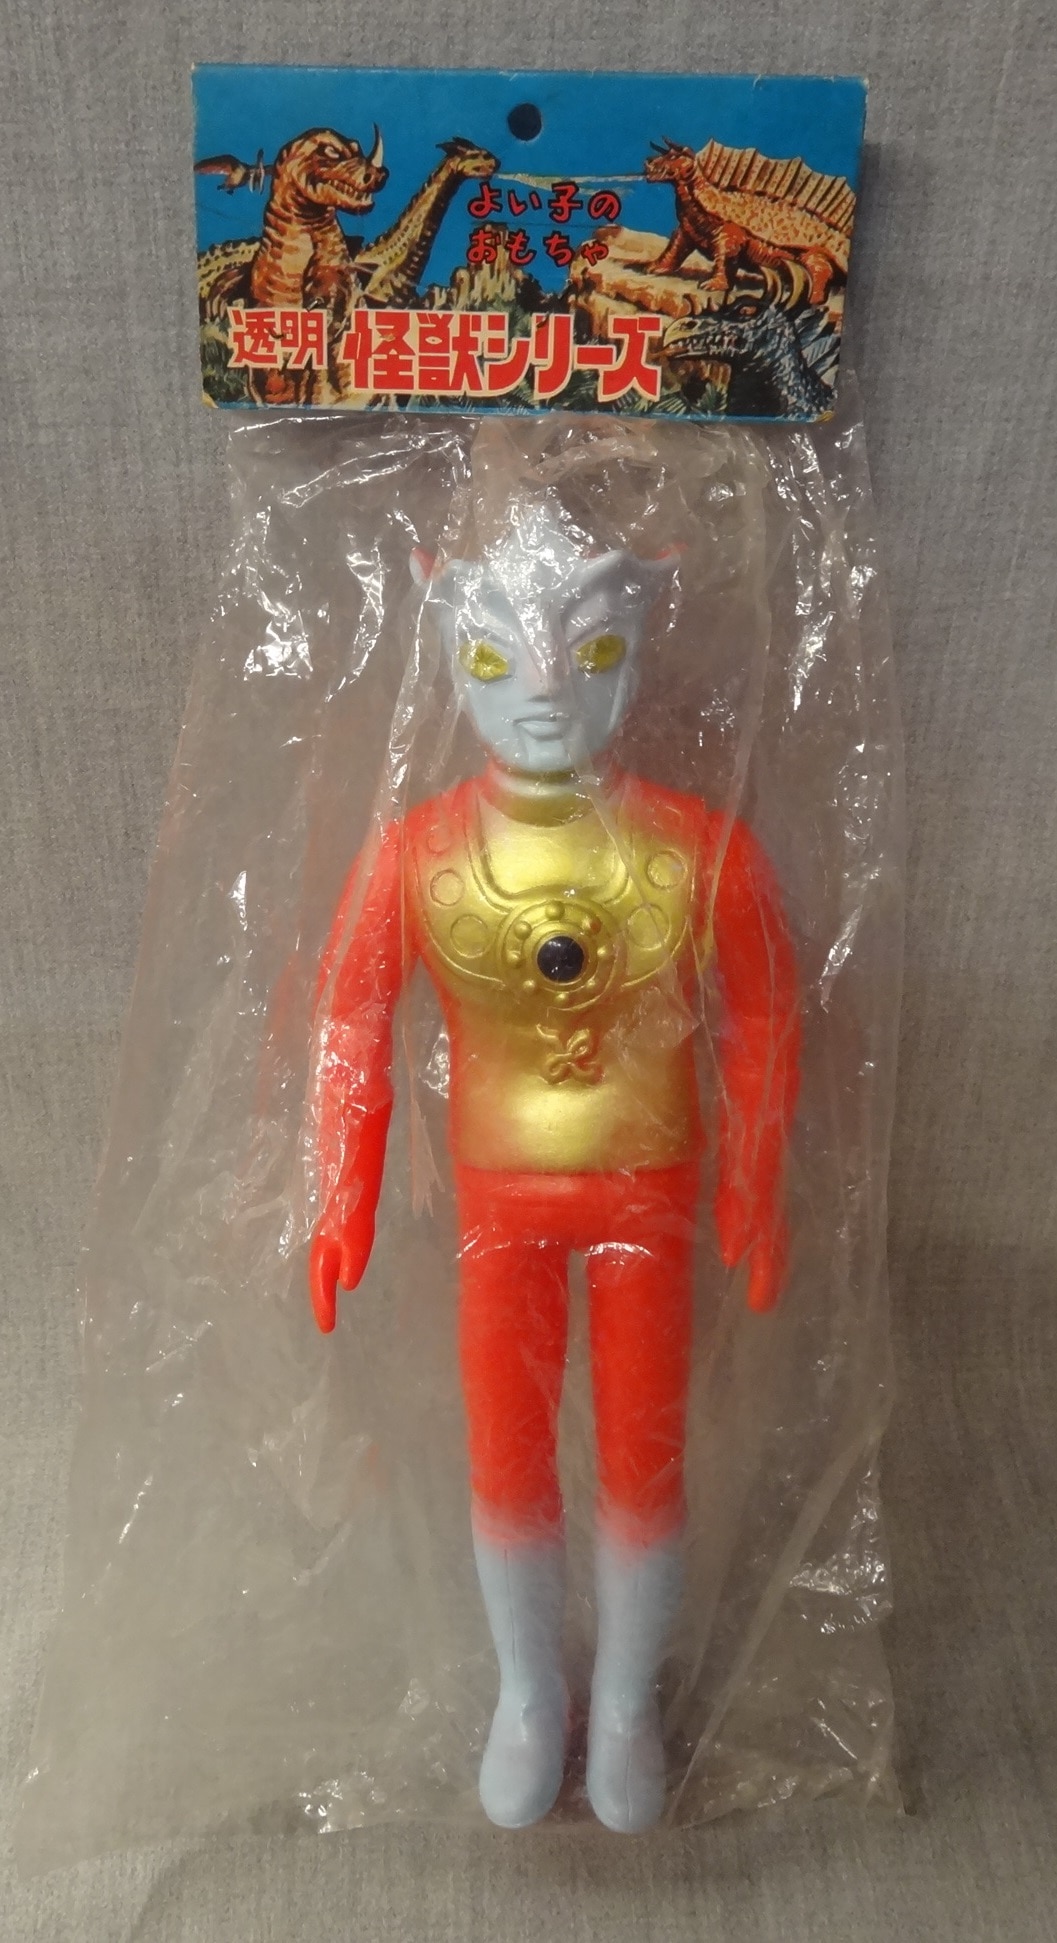 ウルトラマンレオ ソフビ フィギュア 無版権 パチ 人形 全長約14.5cm 